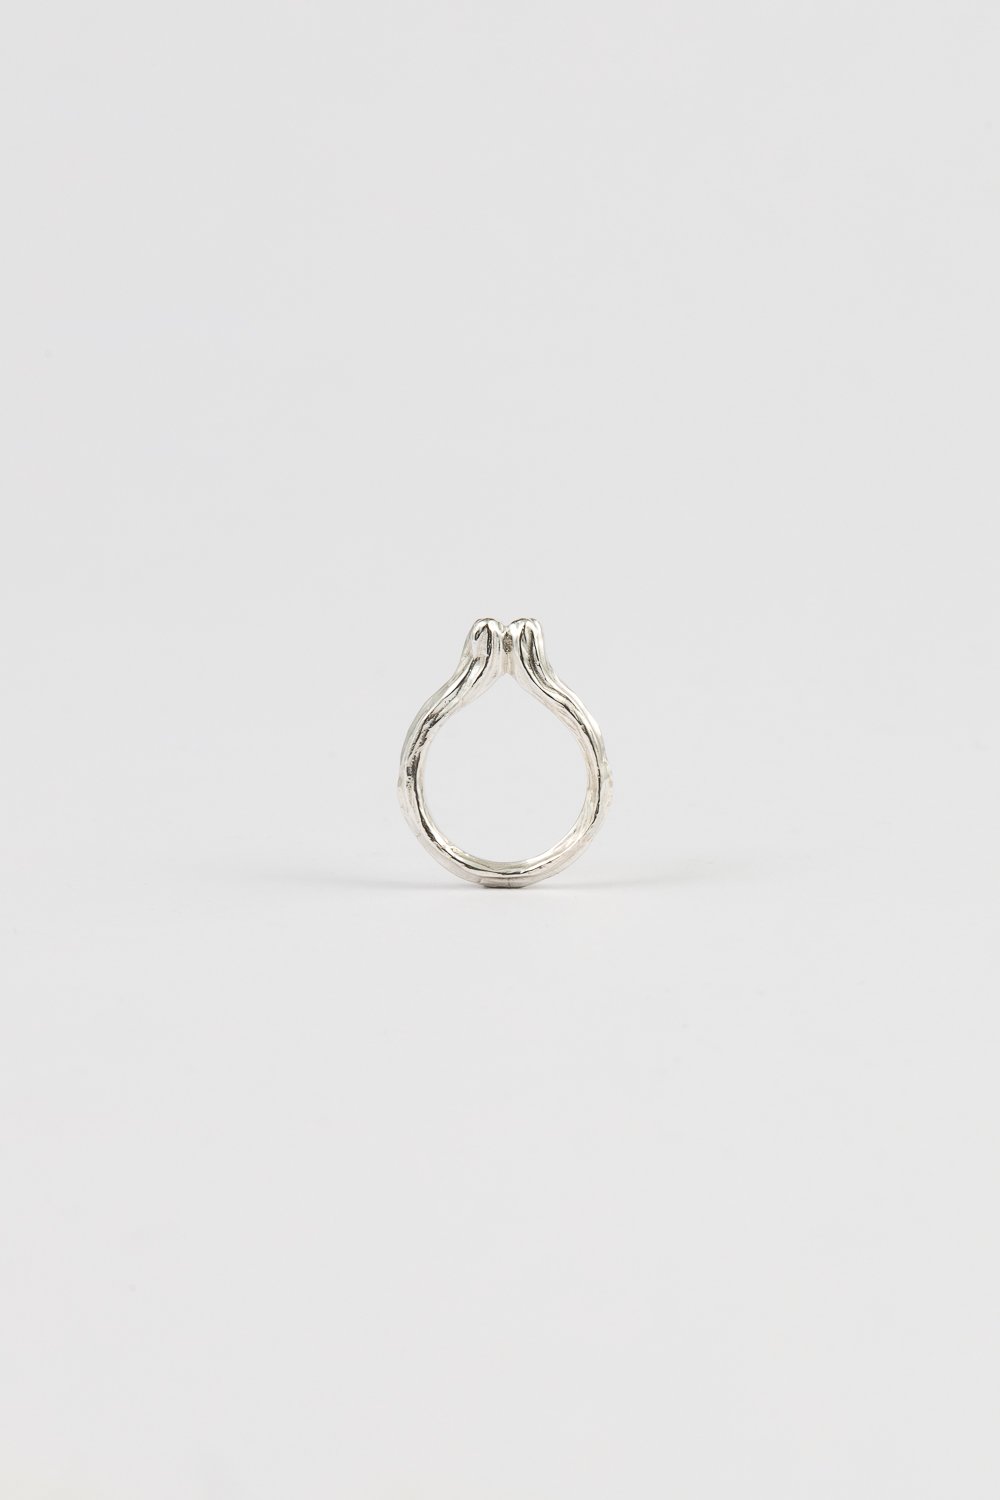 Image of cereus ring